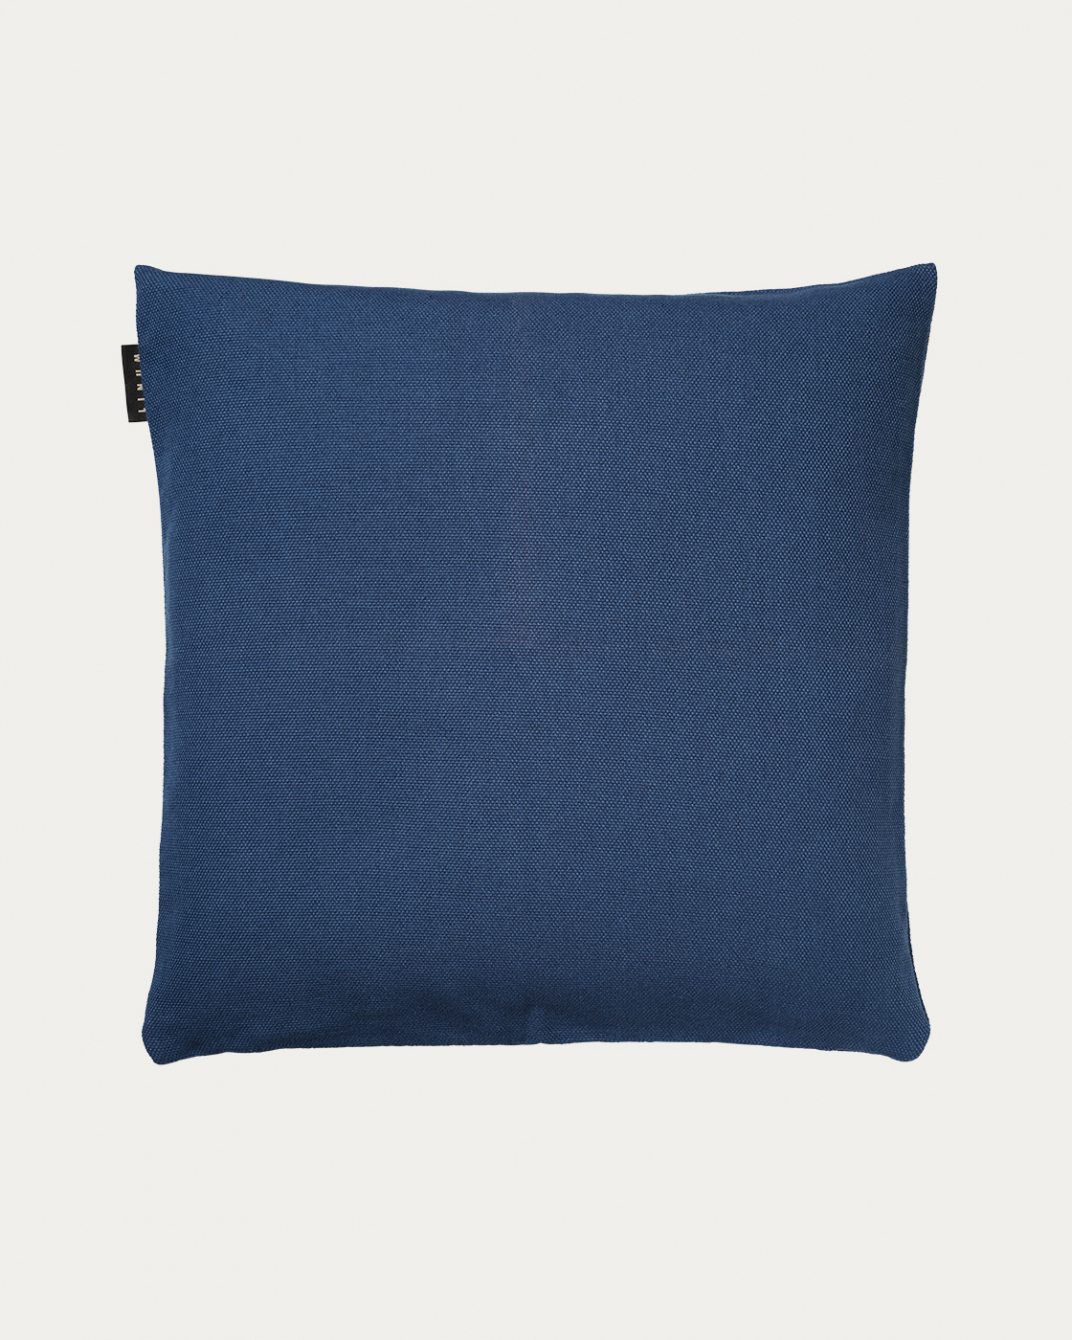 Image du produit housse de coussin PEPPER bleu nuit en coton doux de LINUM DESIGN. Facile à laver et durable pendant des générations. Taille 50 x 50 cm.